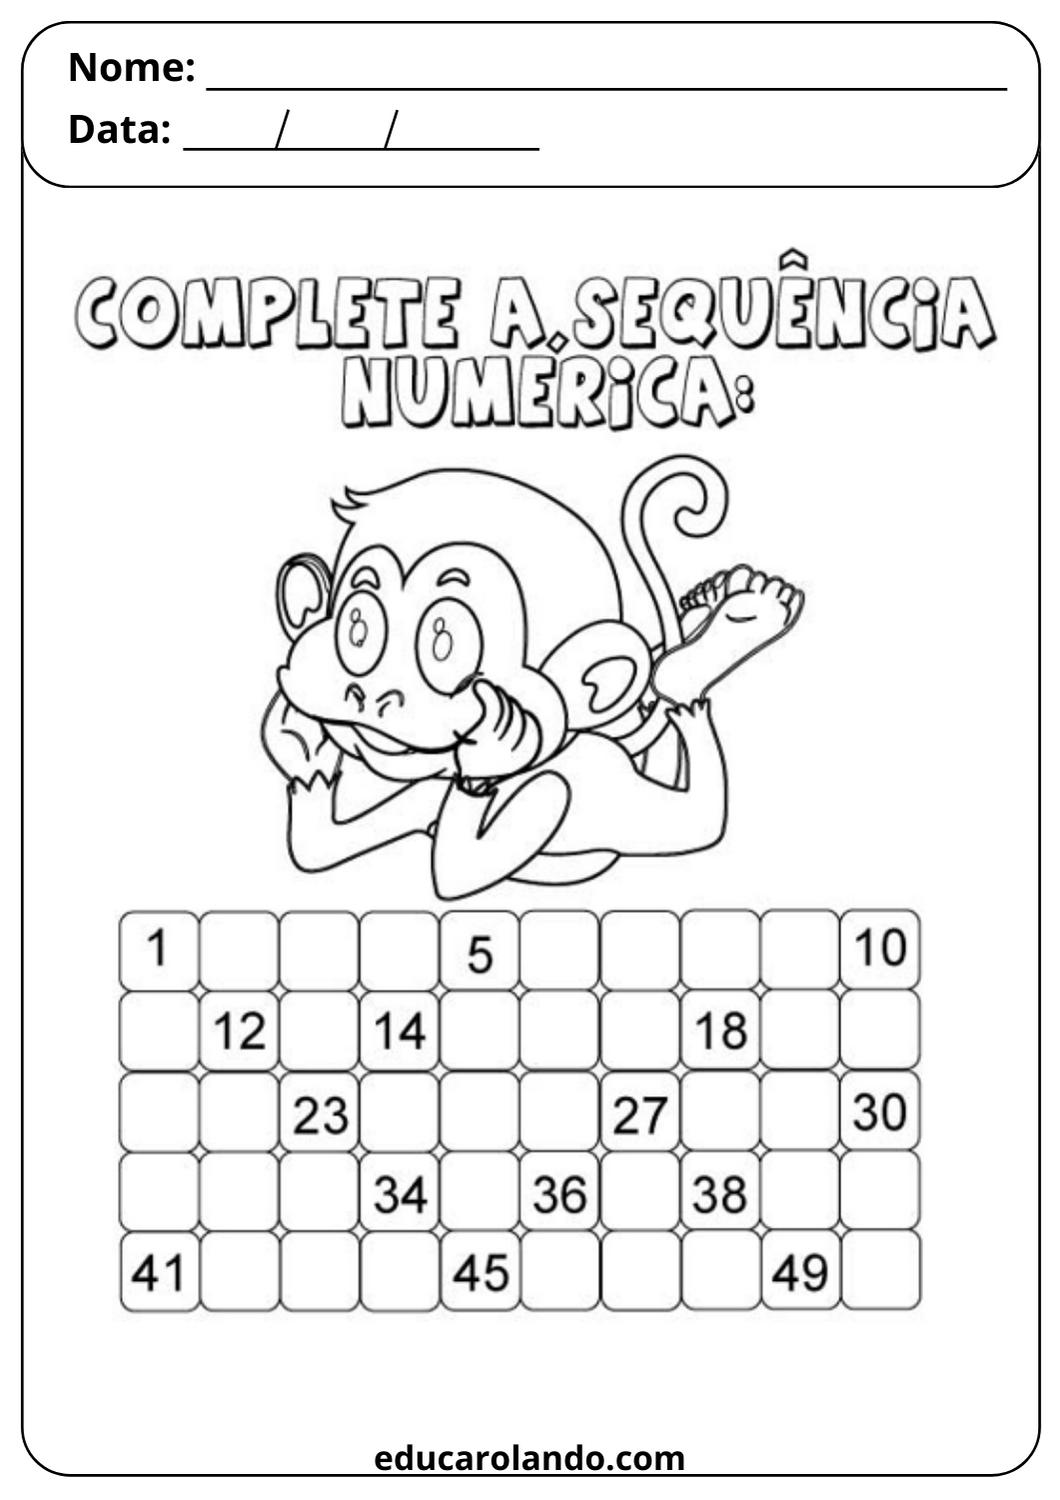 Complete a sequência numérica (1)